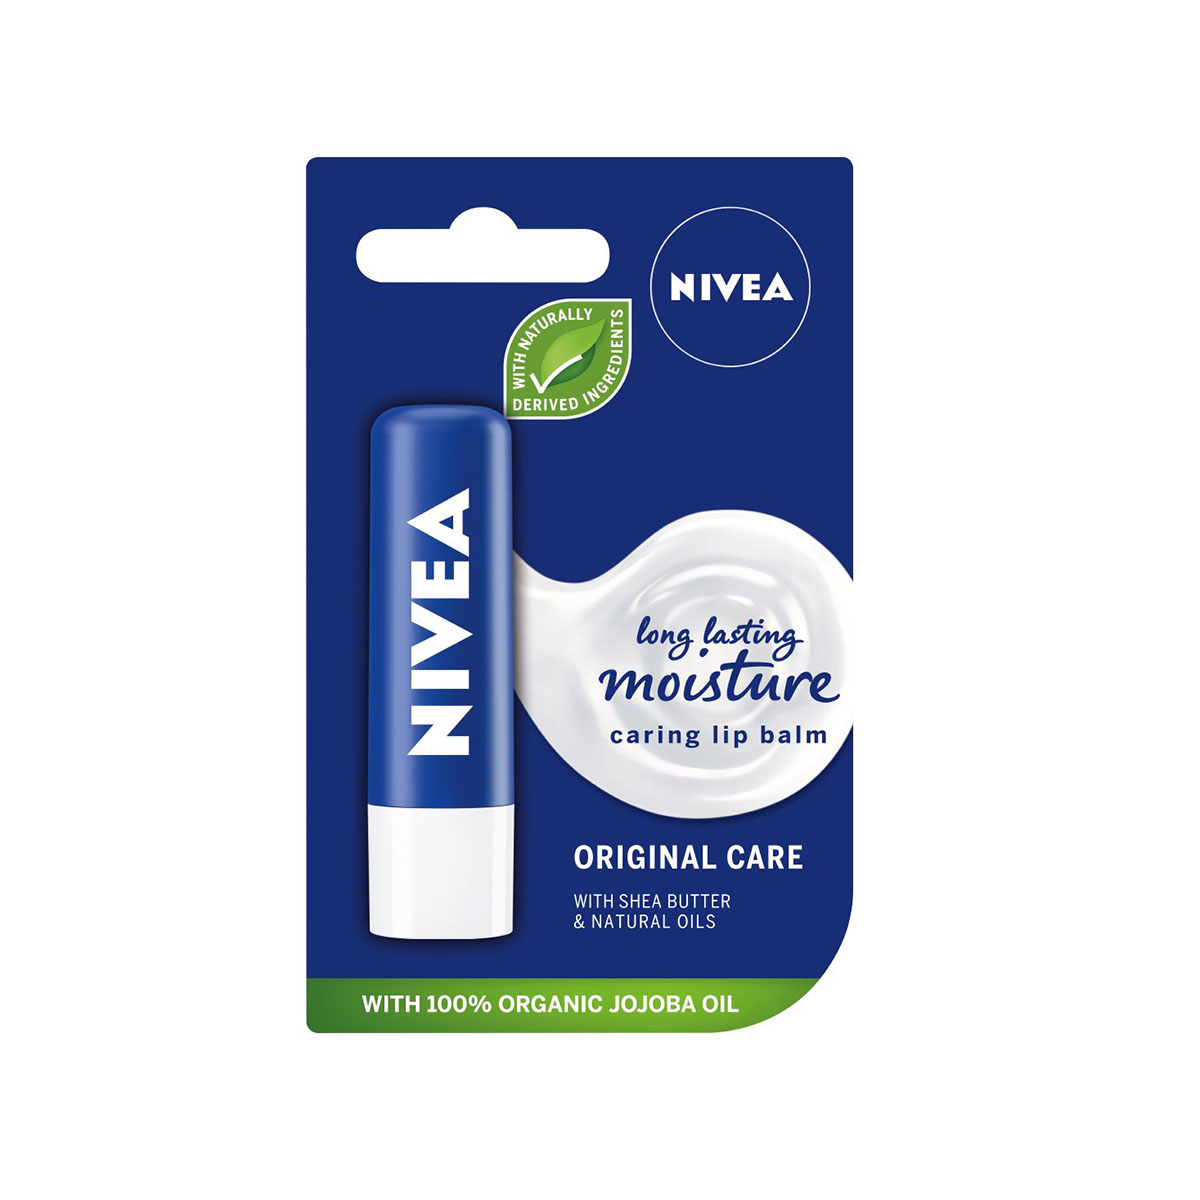 Son dưỡng môi Nivea có tốt không?